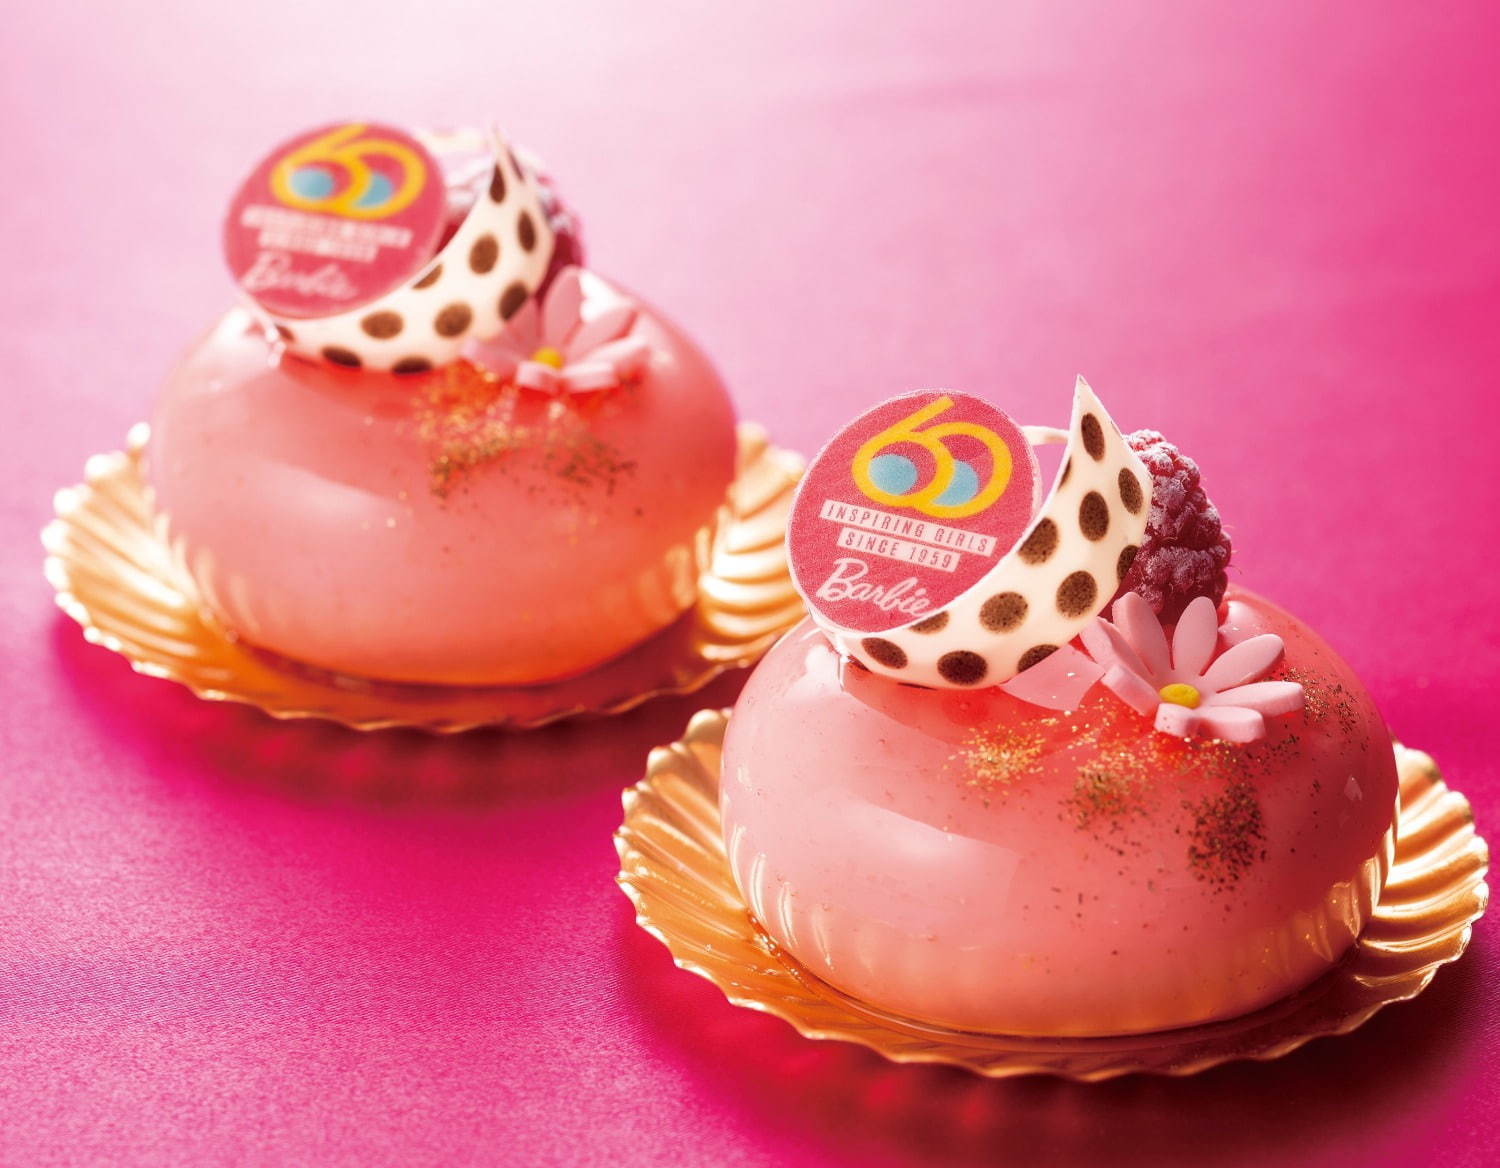 帝国ホテル 東京 バービー 可憐なピンク色 アフタヌーンティー ケーキ デビュー60周年記念展示も ファッションプレス